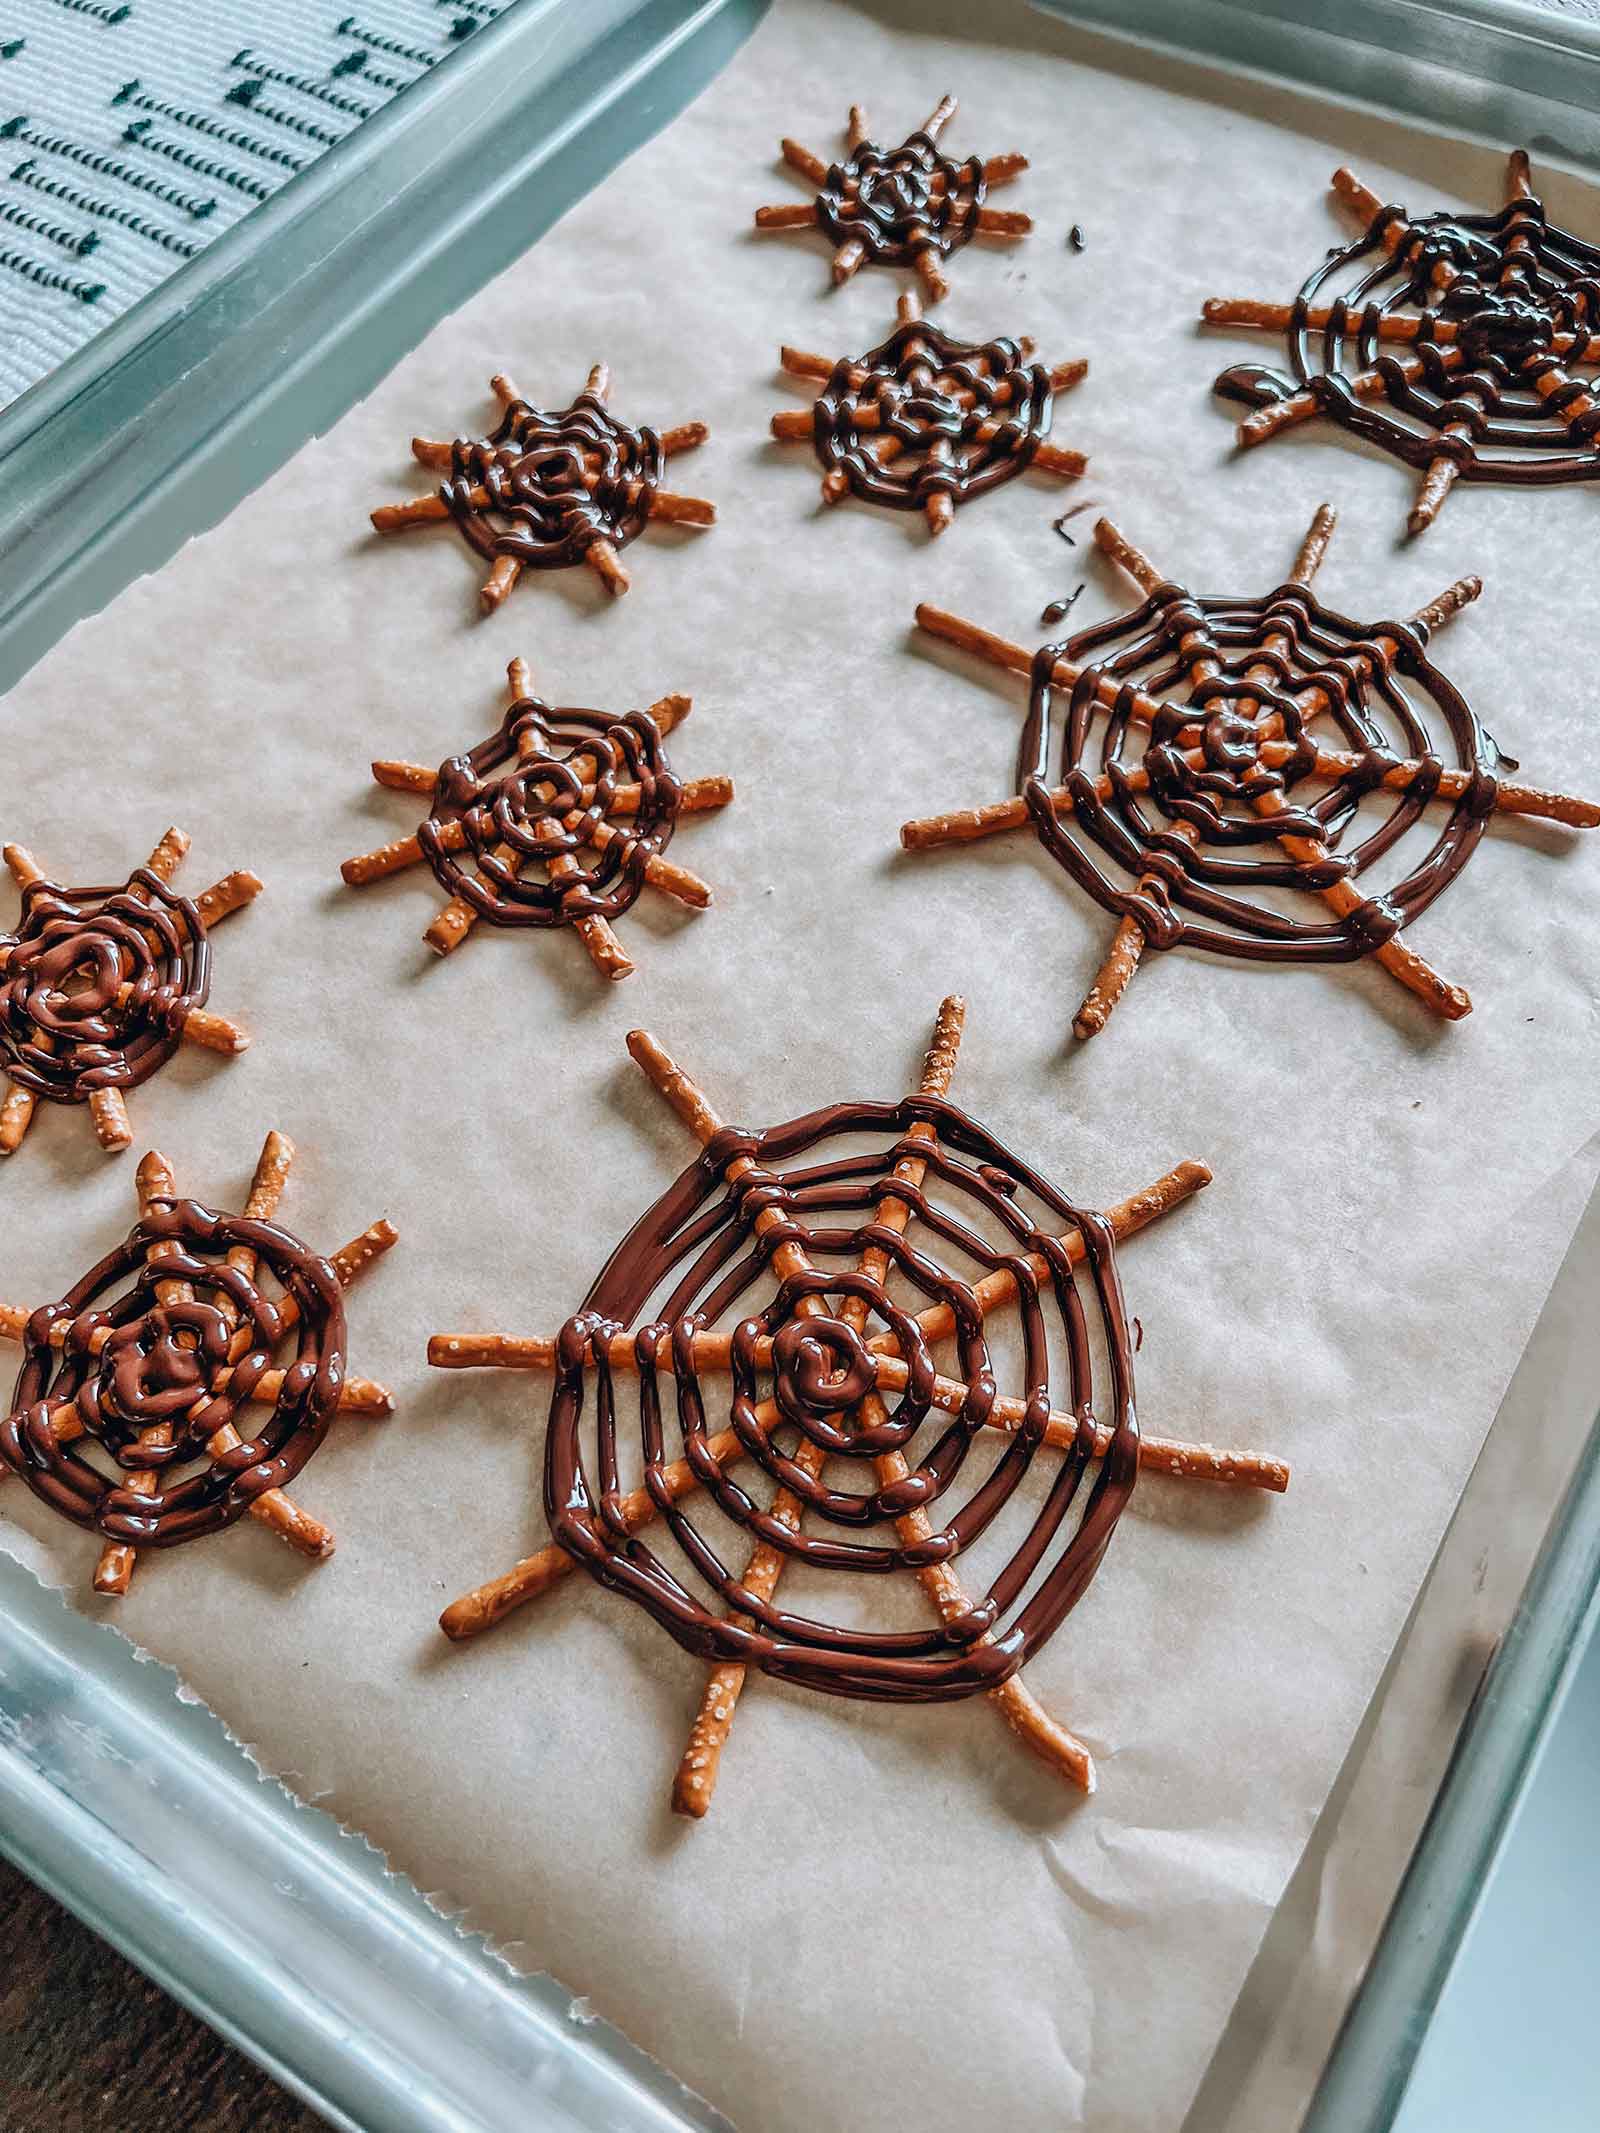 Pretzel spider webs Halloween snack treat dessert with dairy-free chocolate chips